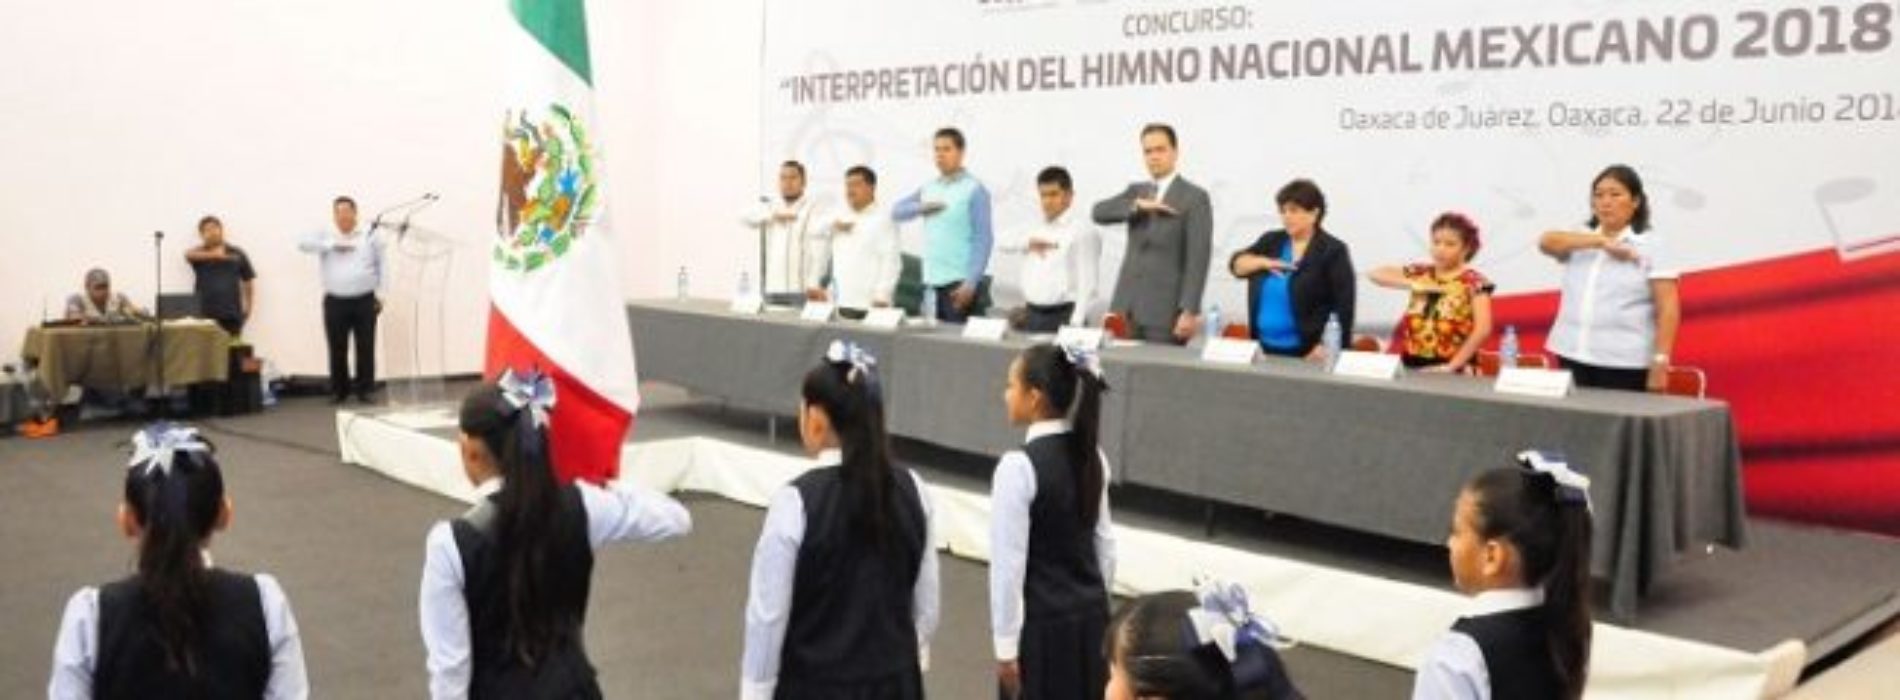 Reconoce IEEPO a las mejores interpretaciones del Himno
Nacional Mexicano